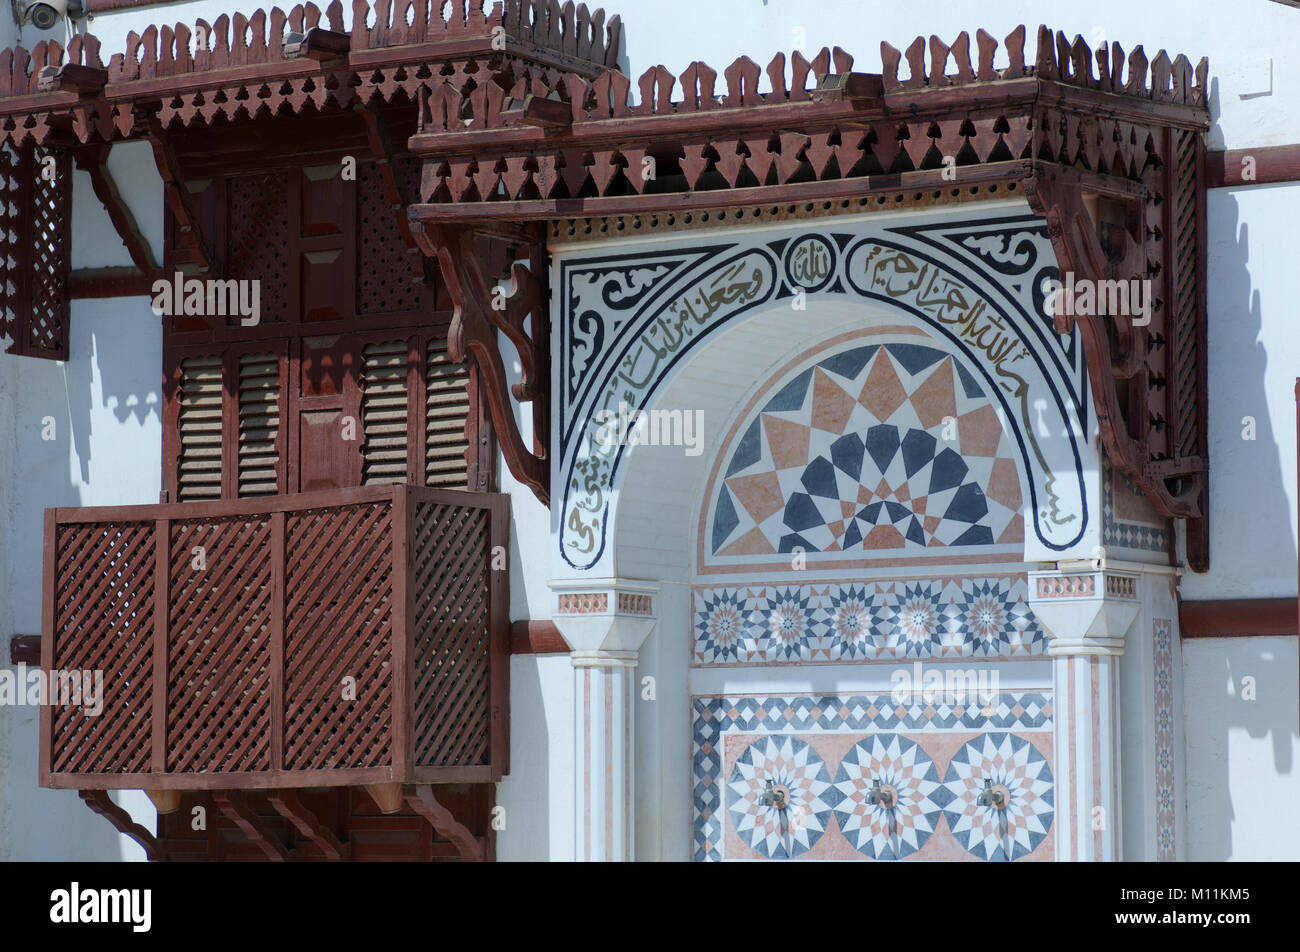 Detalles de la antigua mezquita de Jeddah, Arabia Saudita Foto de stock